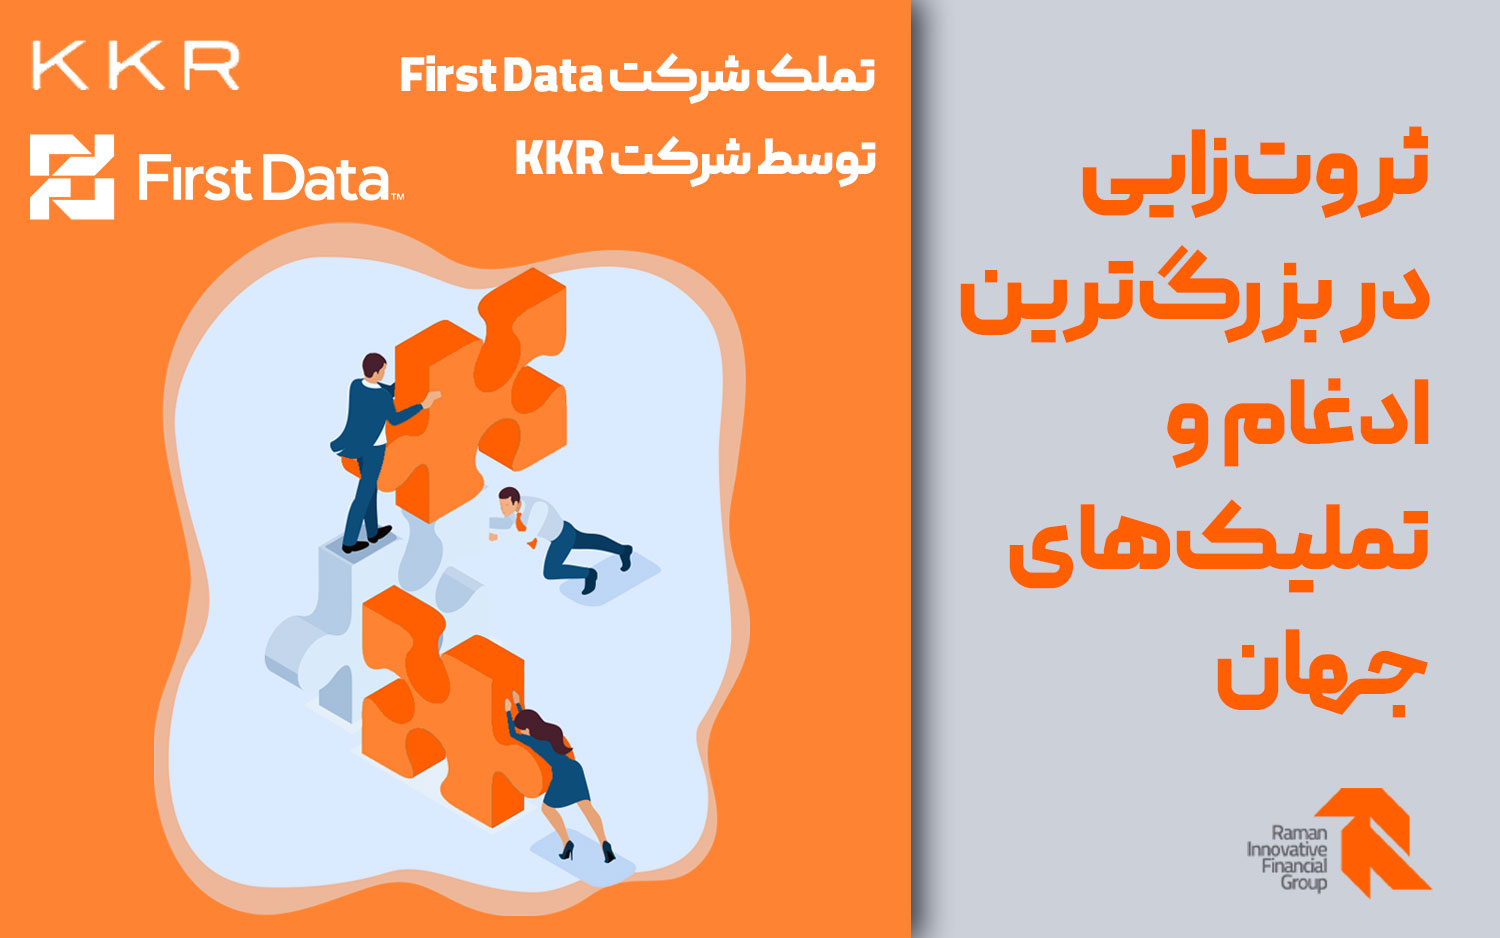 تملک شرکت First Data توسط شرکت KKR